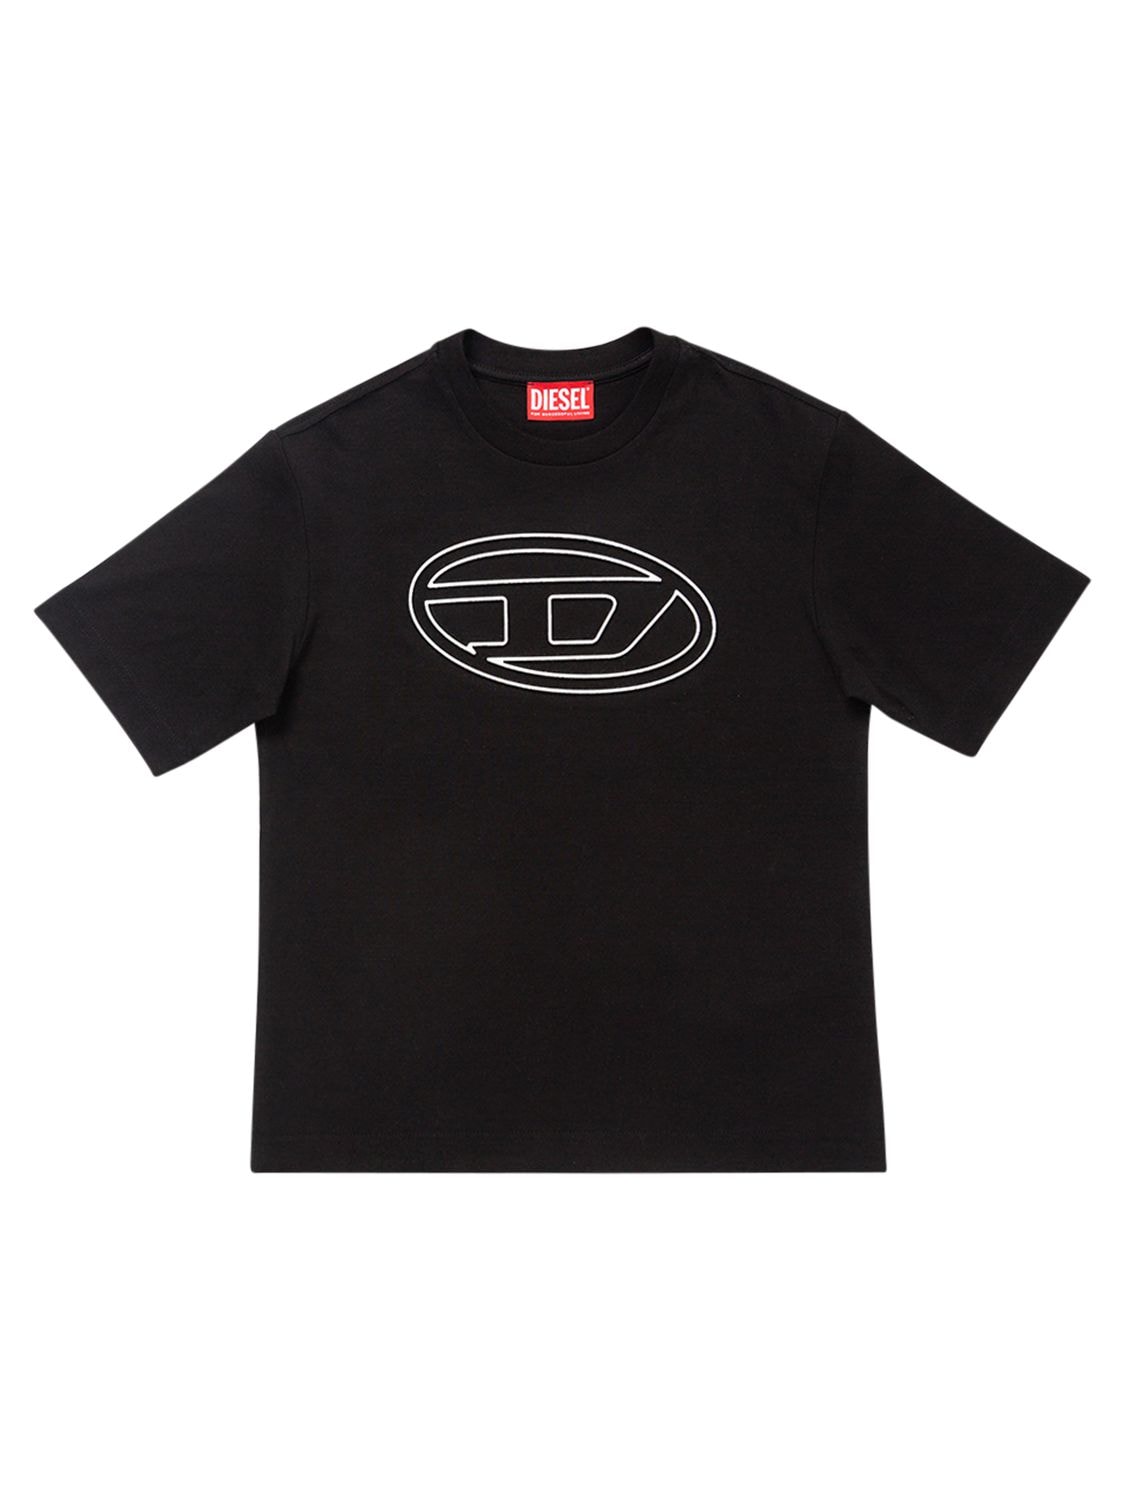 Diesel Kids' Cotton Logo T-shirt In Black